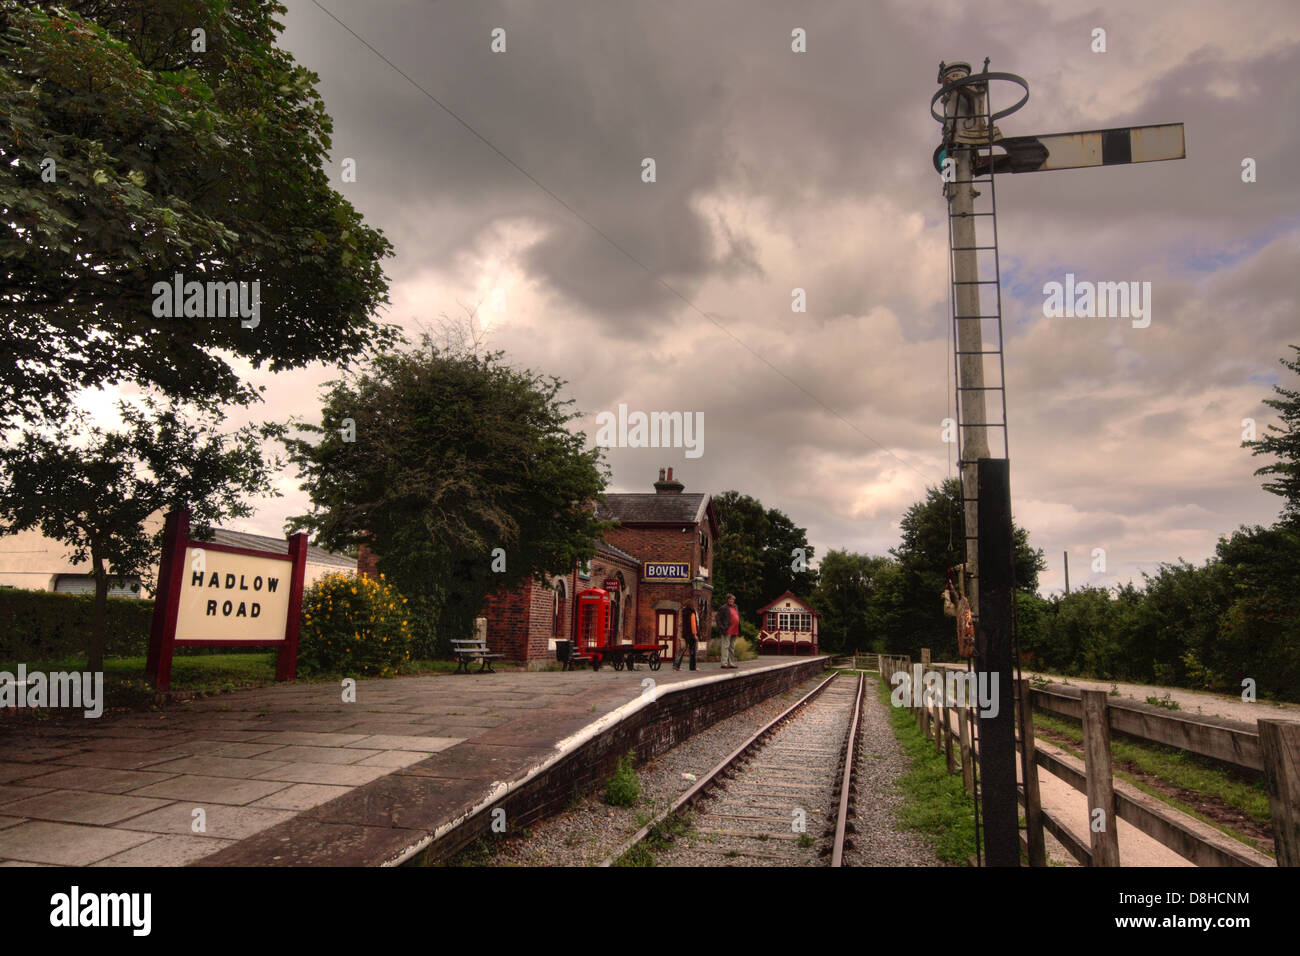 Hadlow road gare ferroviaire historique préservé, avec signal sur la manière, Wirral Merseyside, England, UK Banque D'Images